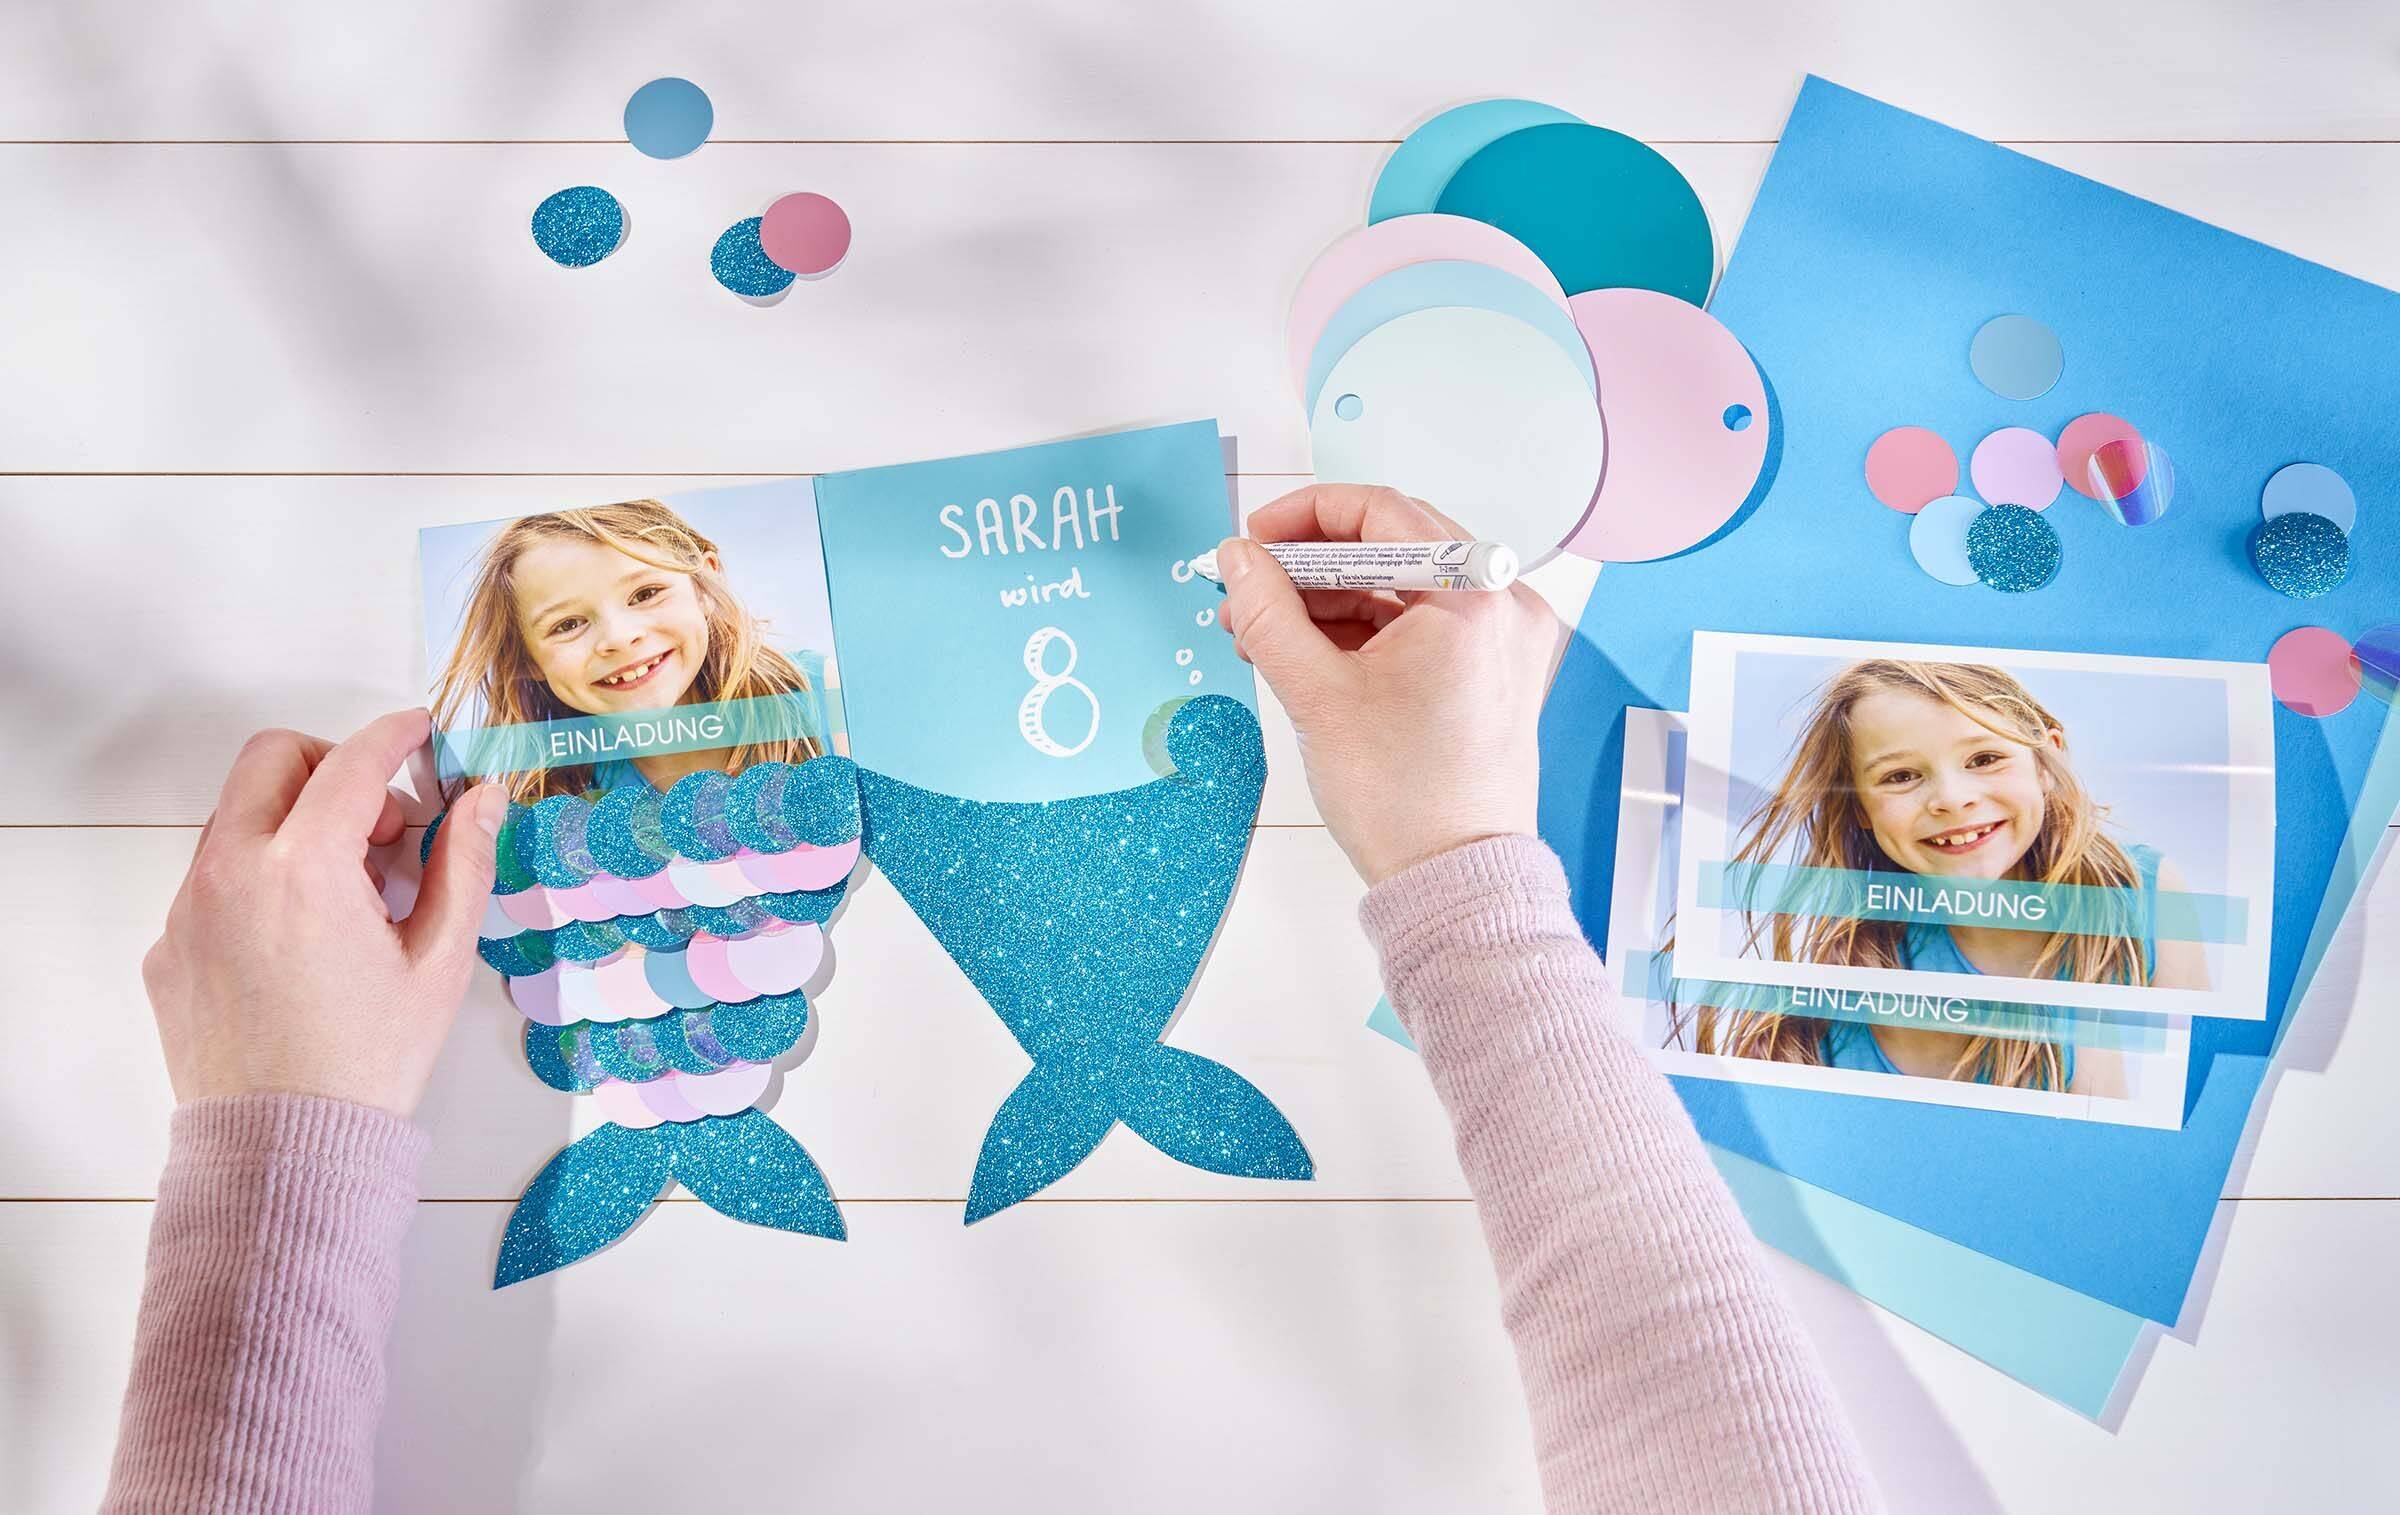 Zwei Hände beschriften eine Geburtstagseinladung im Meerjungfrauen-Stil. Auf der linken Seite ist ein Sofortfoto des Geburtstagskindes zu sehen. Im rechten Teil steht die Aufschrift “Sarah wird 8”. Daneben liegen weitere Fotos, Tonpapier und kleine Kreise zum Aufkleben.